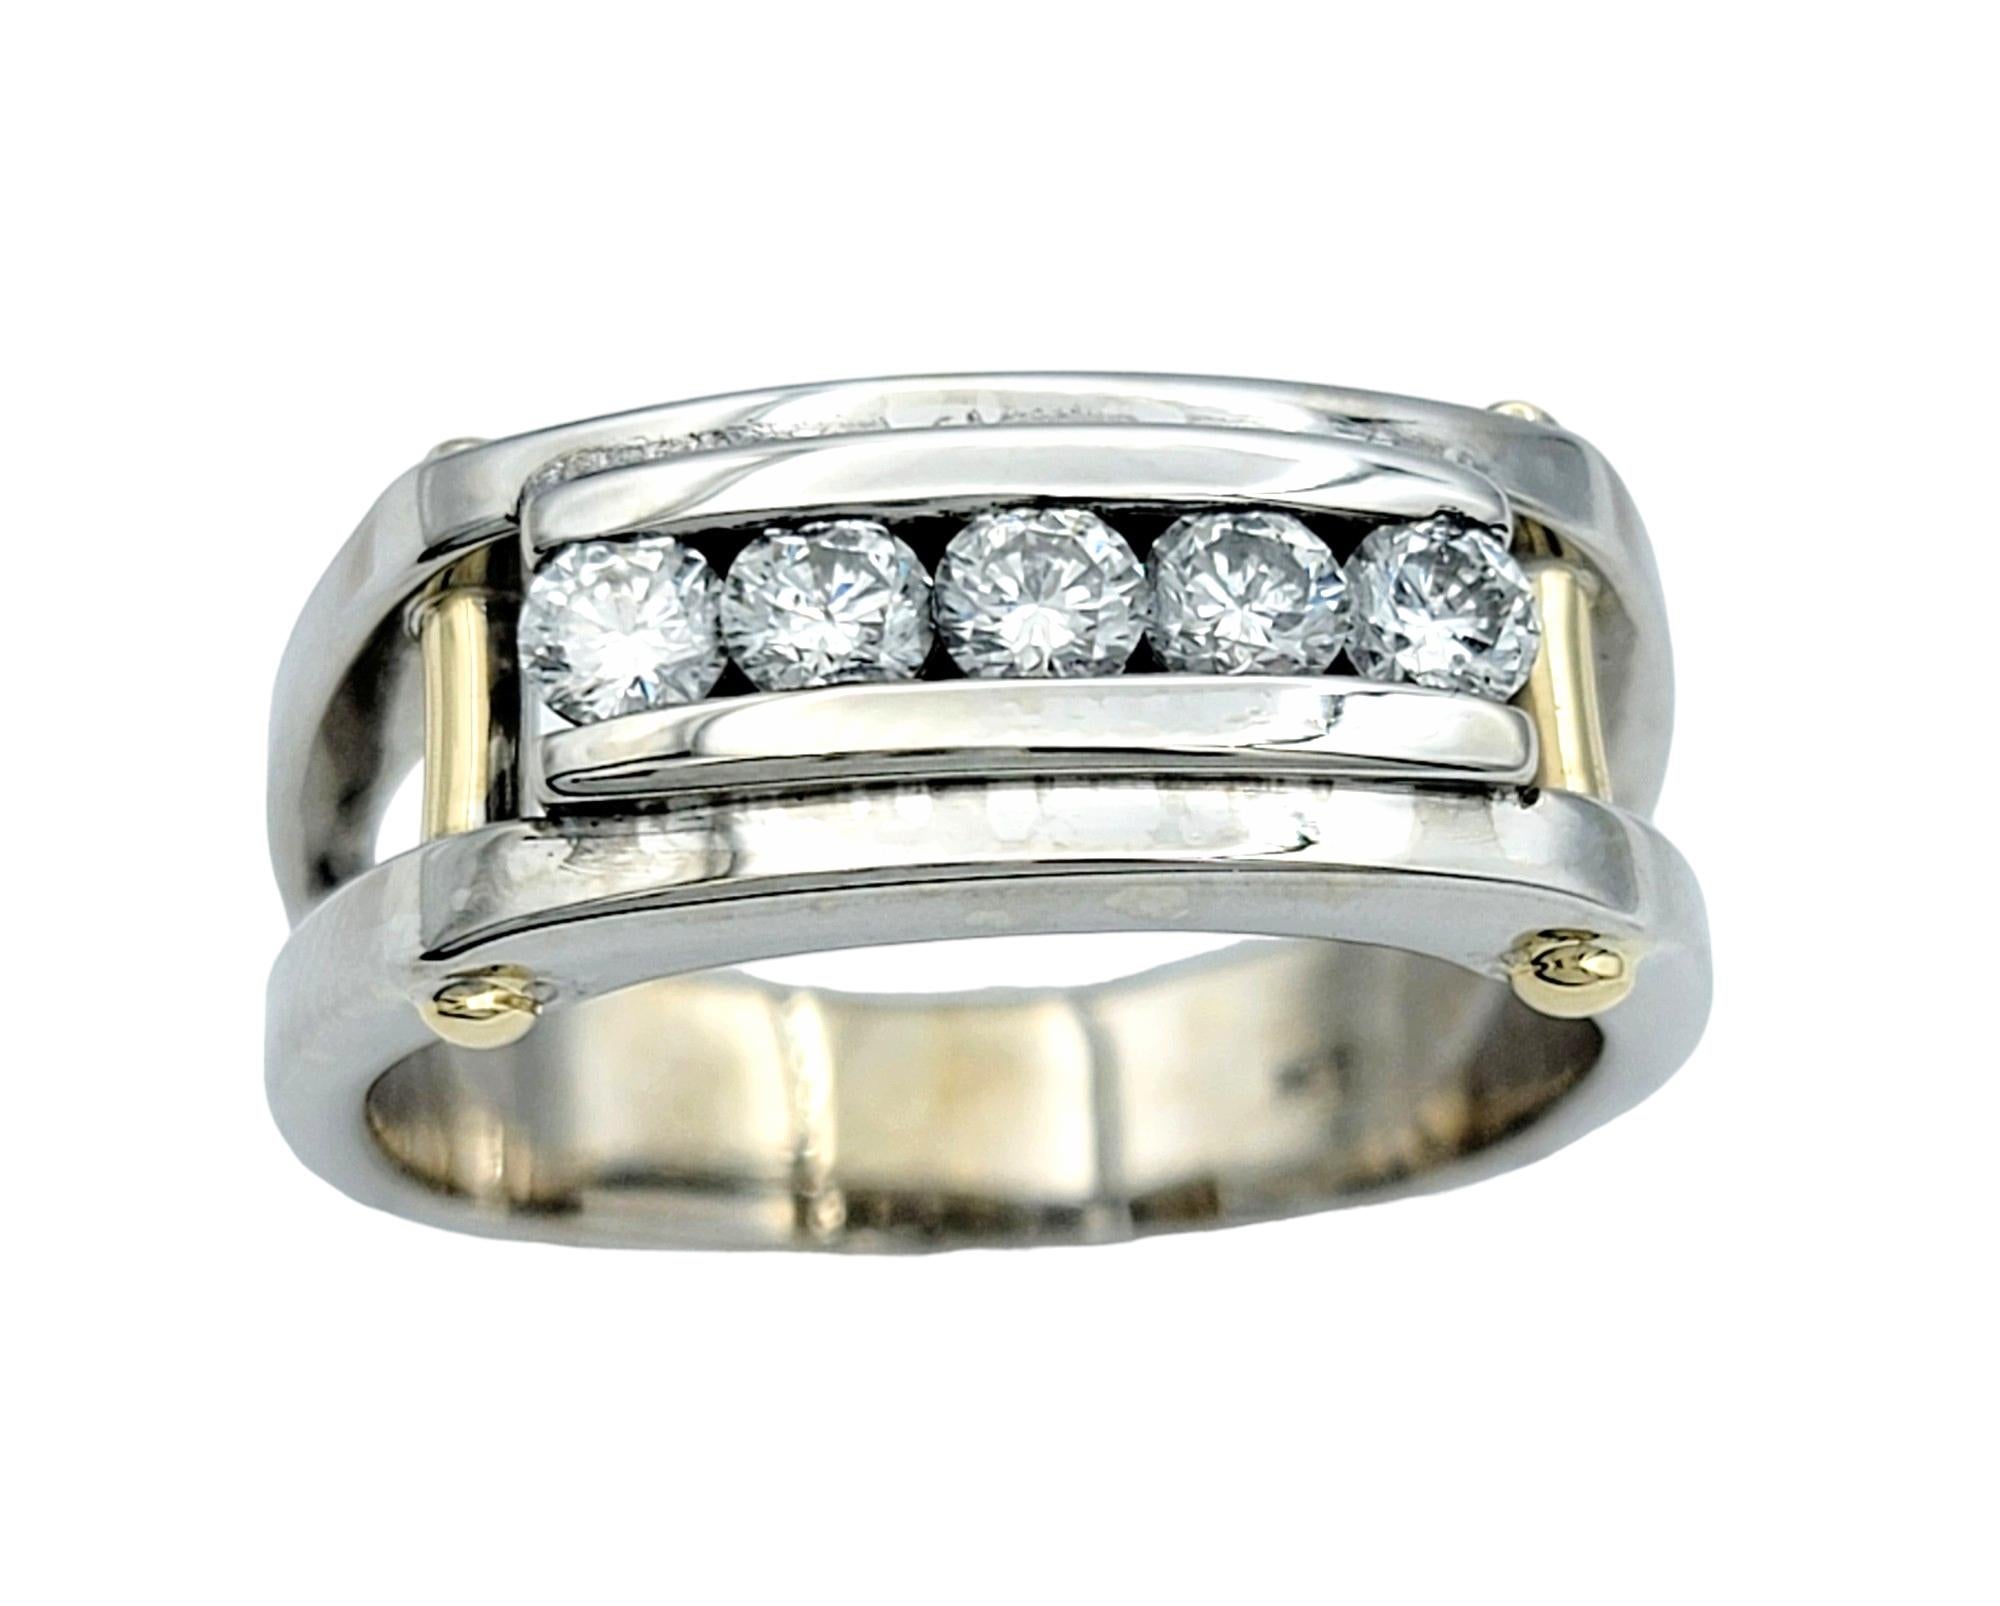 Ringgröße: 9.75

Dieser Diamantring für Herren wurde für den modernen Gentleman entworfen und strahlt Stärke und Raffinesse aus. Dieser Ring aus einer robusten Kombination aus 14 Karat Weiß- und Gelbgold besticht durch sein kühnes Design, das die